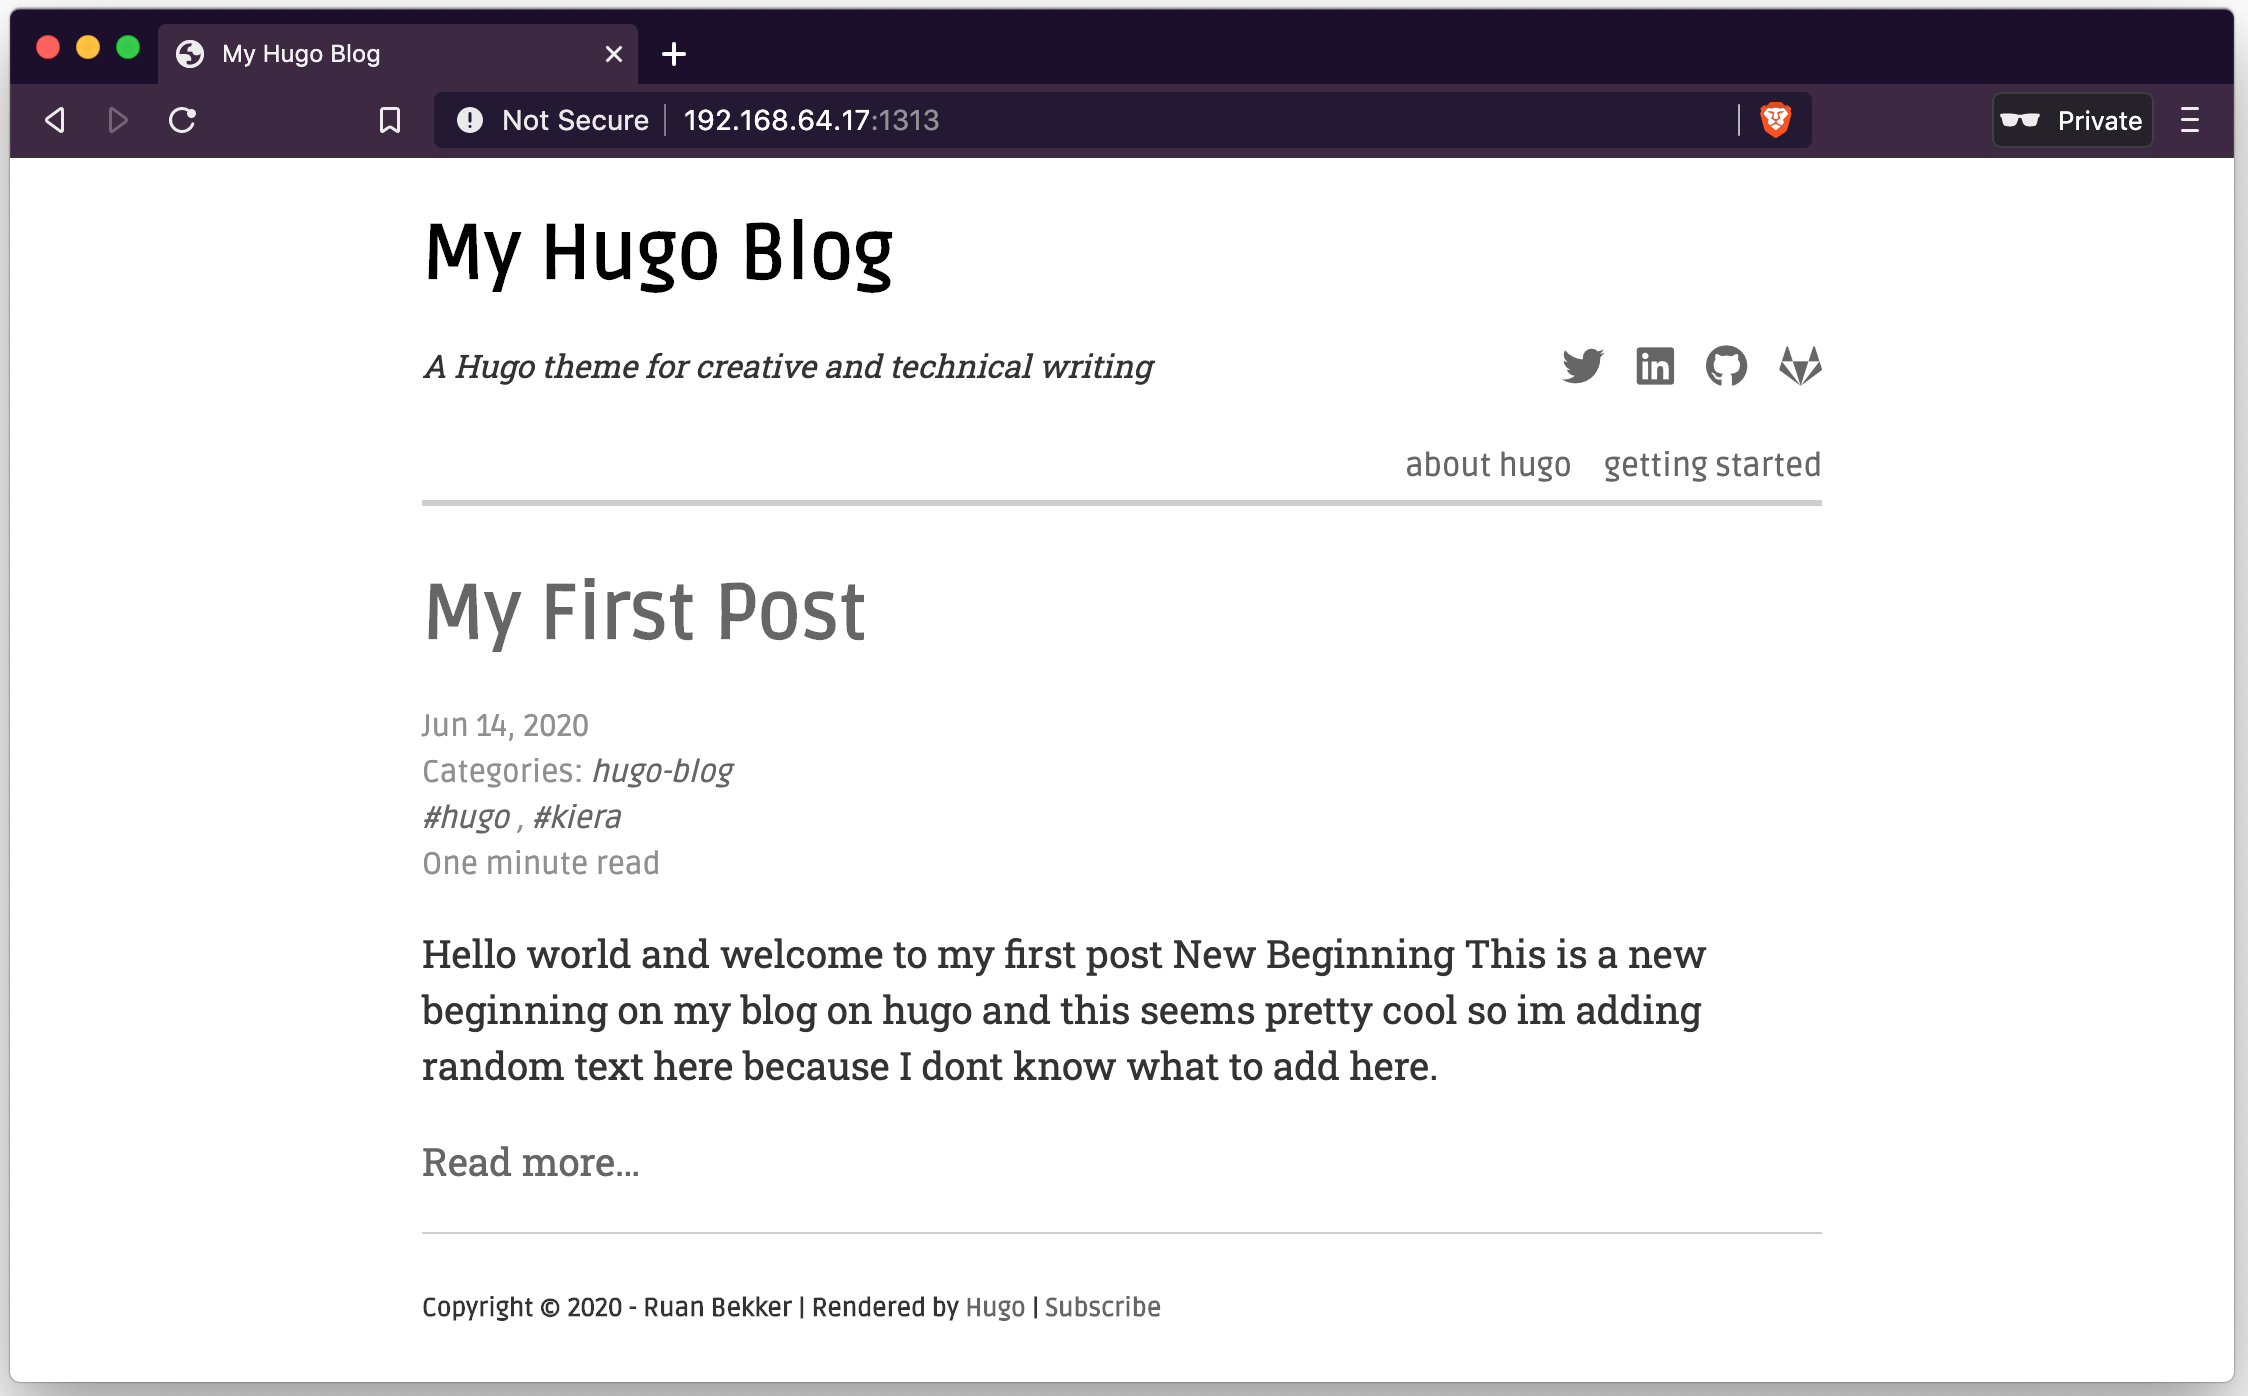 hugo-blog-with-home-page